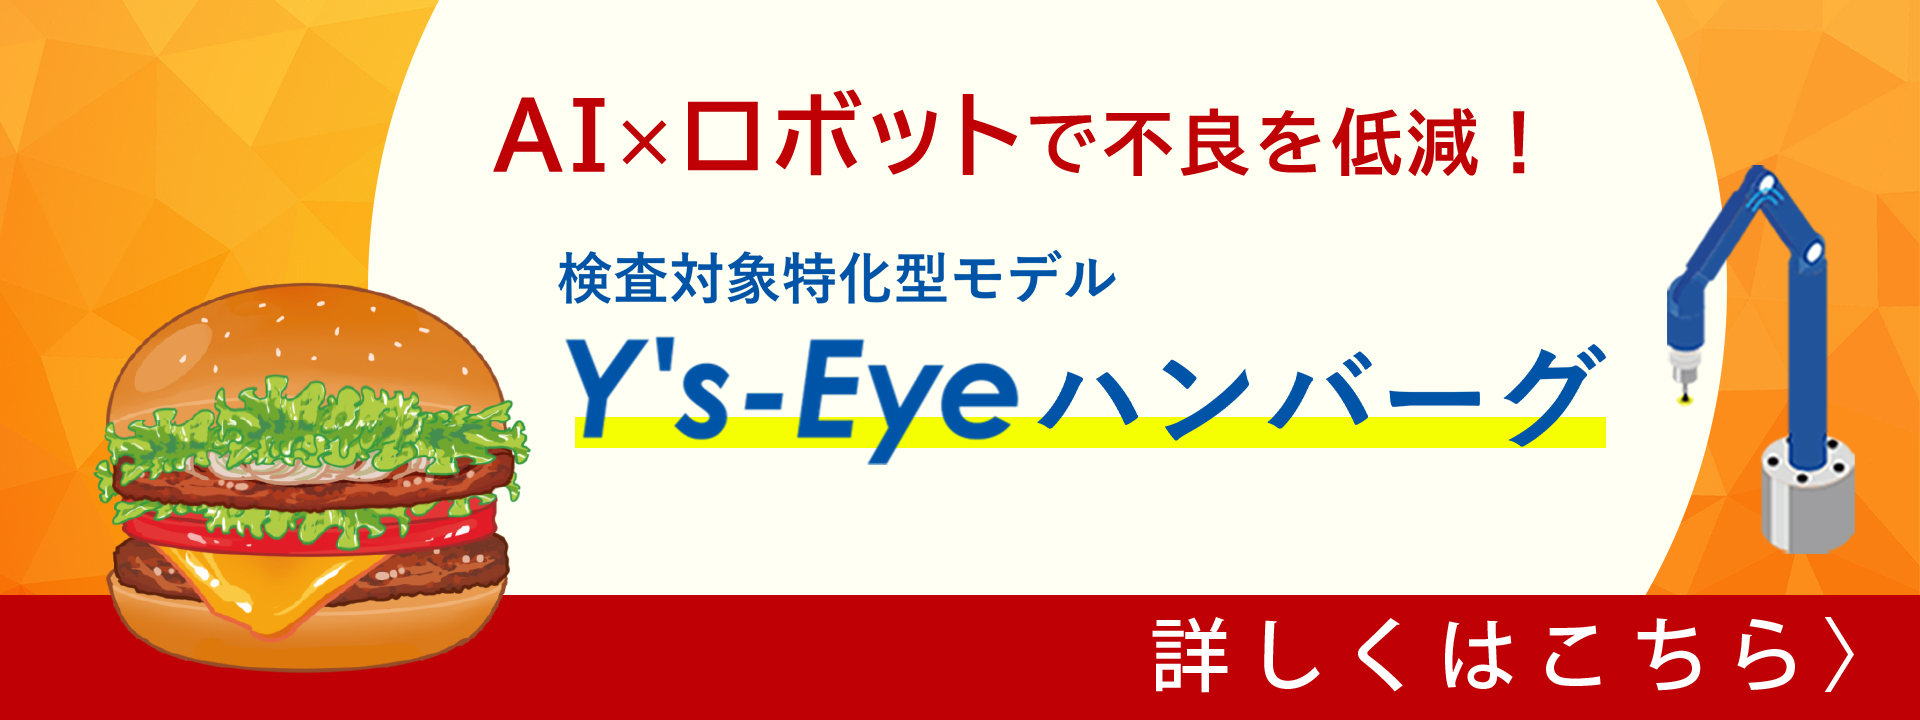 バナー_type1_Ys-Eyeハンバーグ